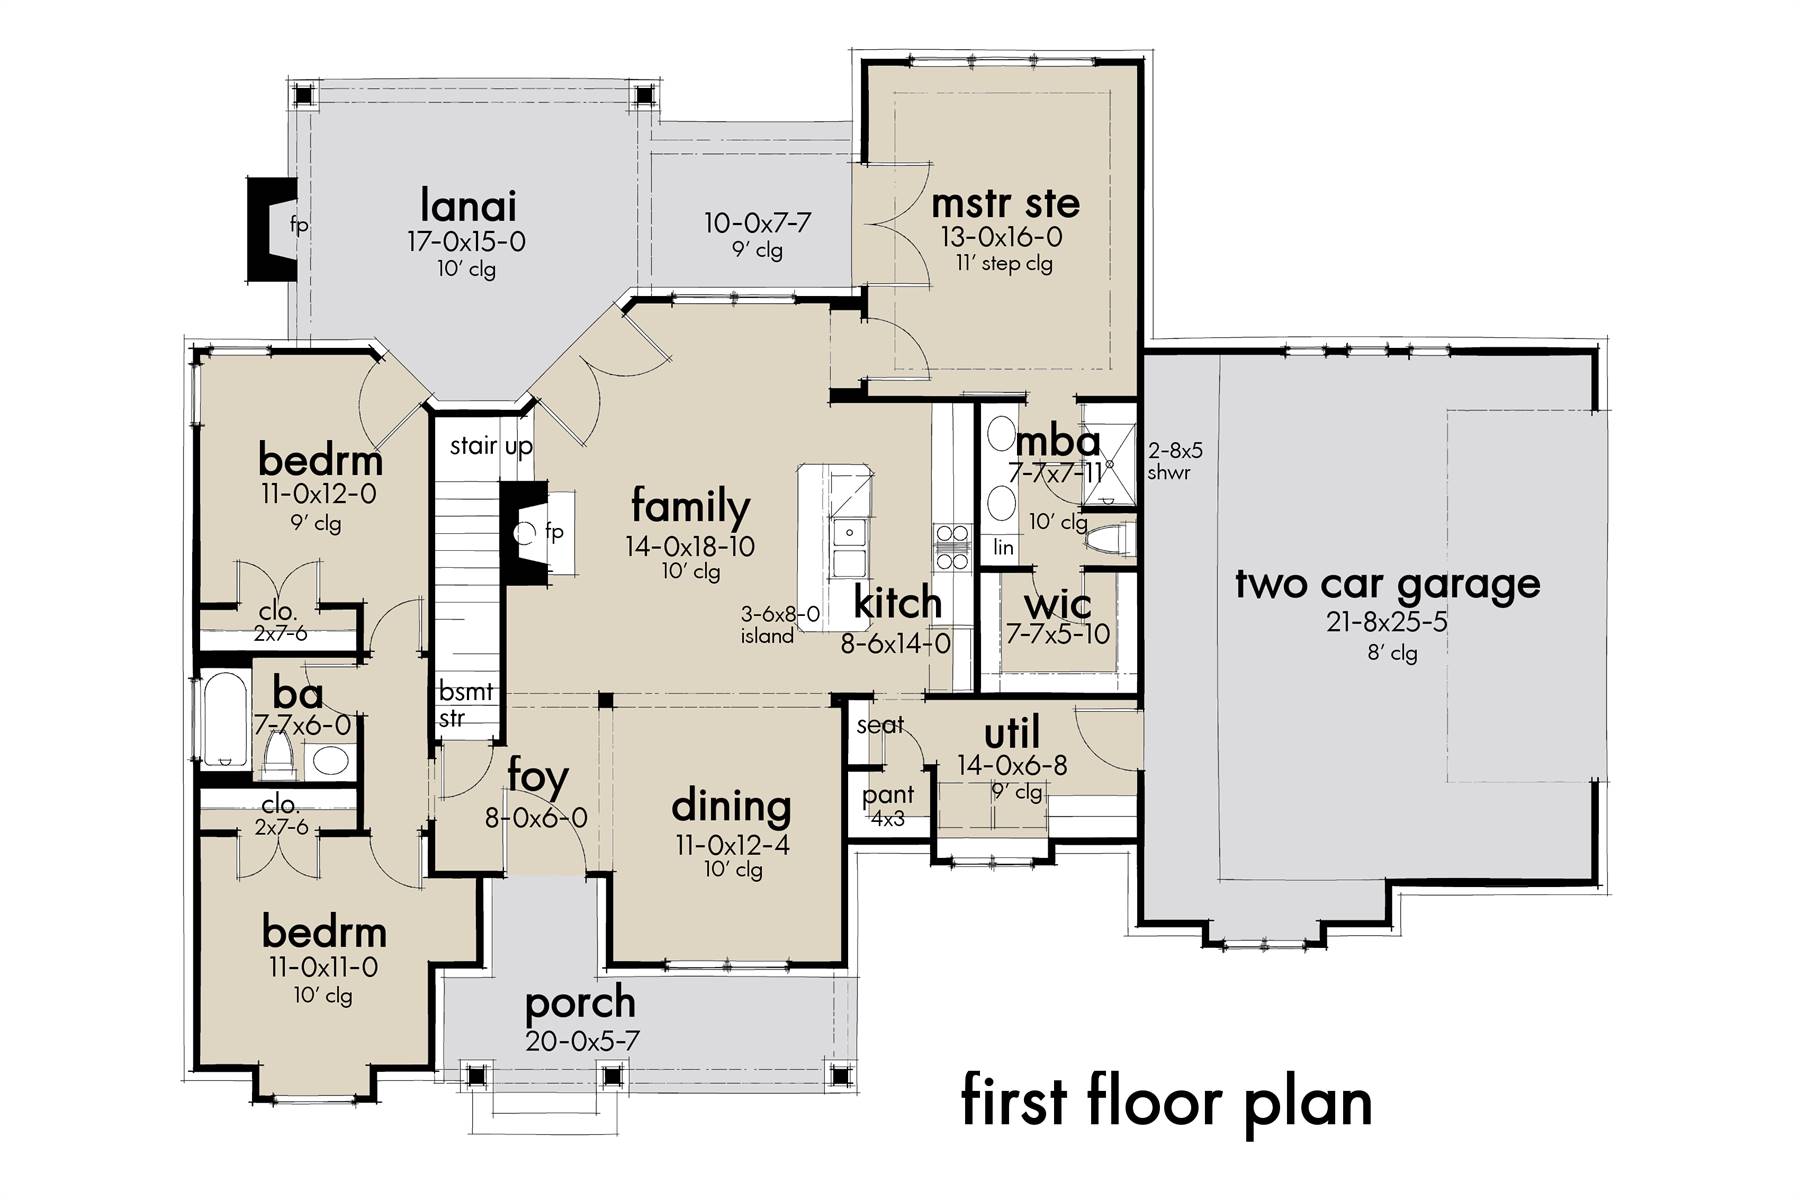 8 X 5 House Plan